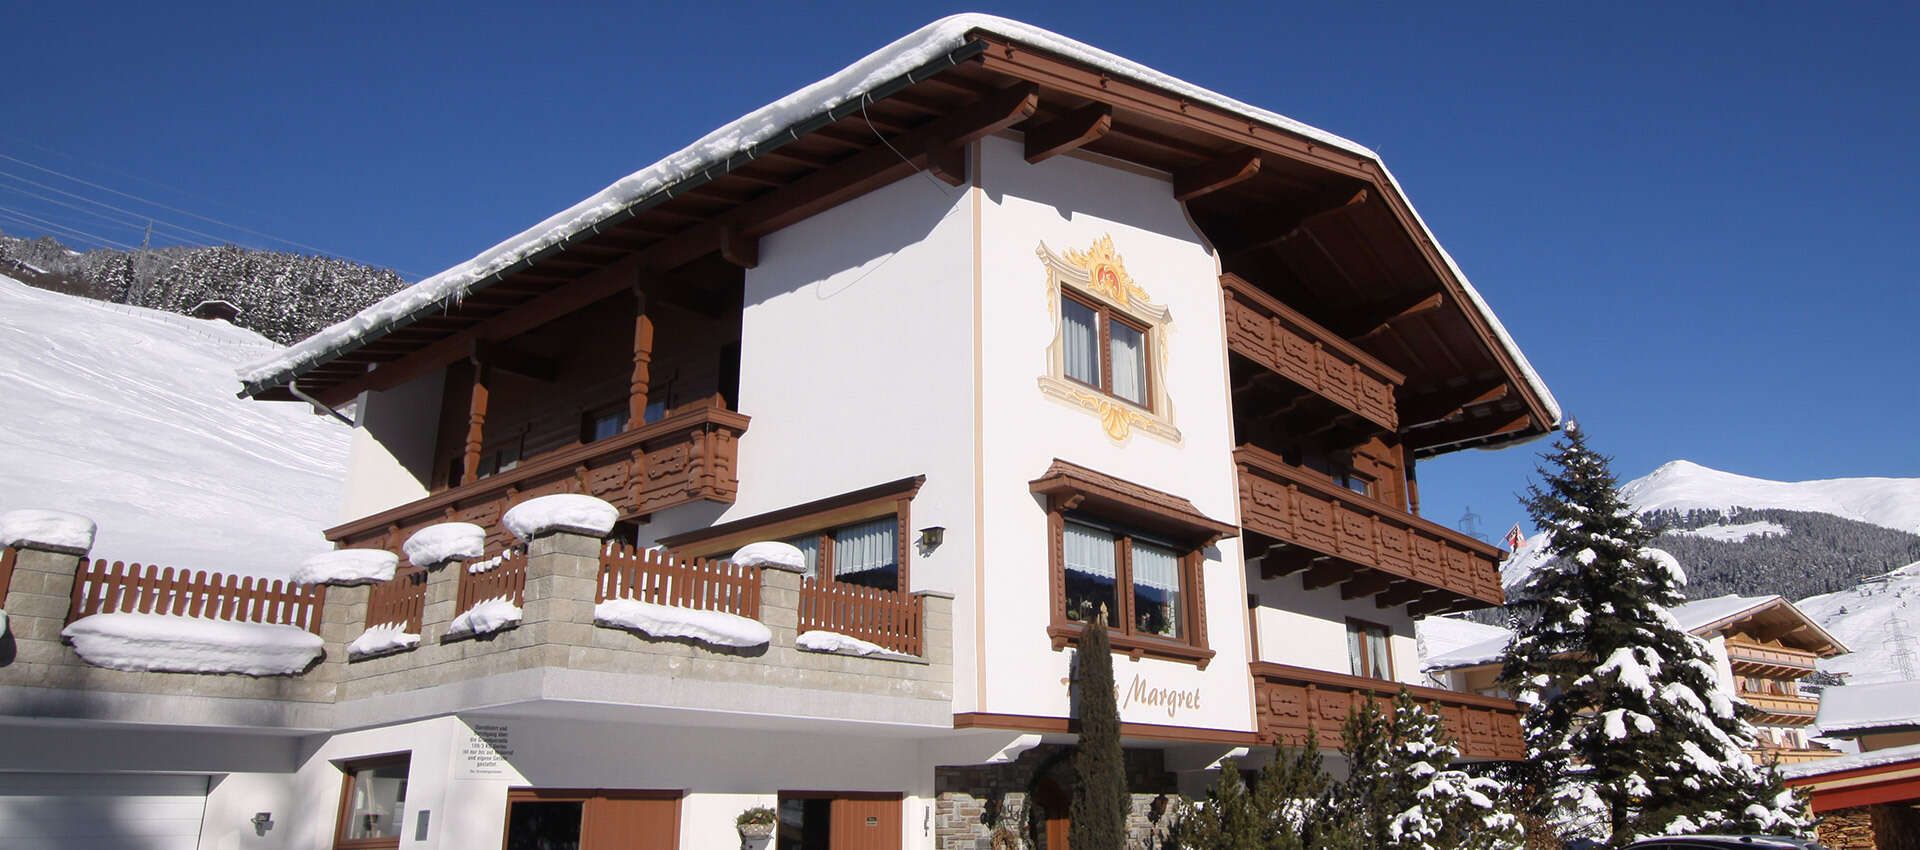 Haus Margret im Winter in Gerlos, Zillertal in Tirol